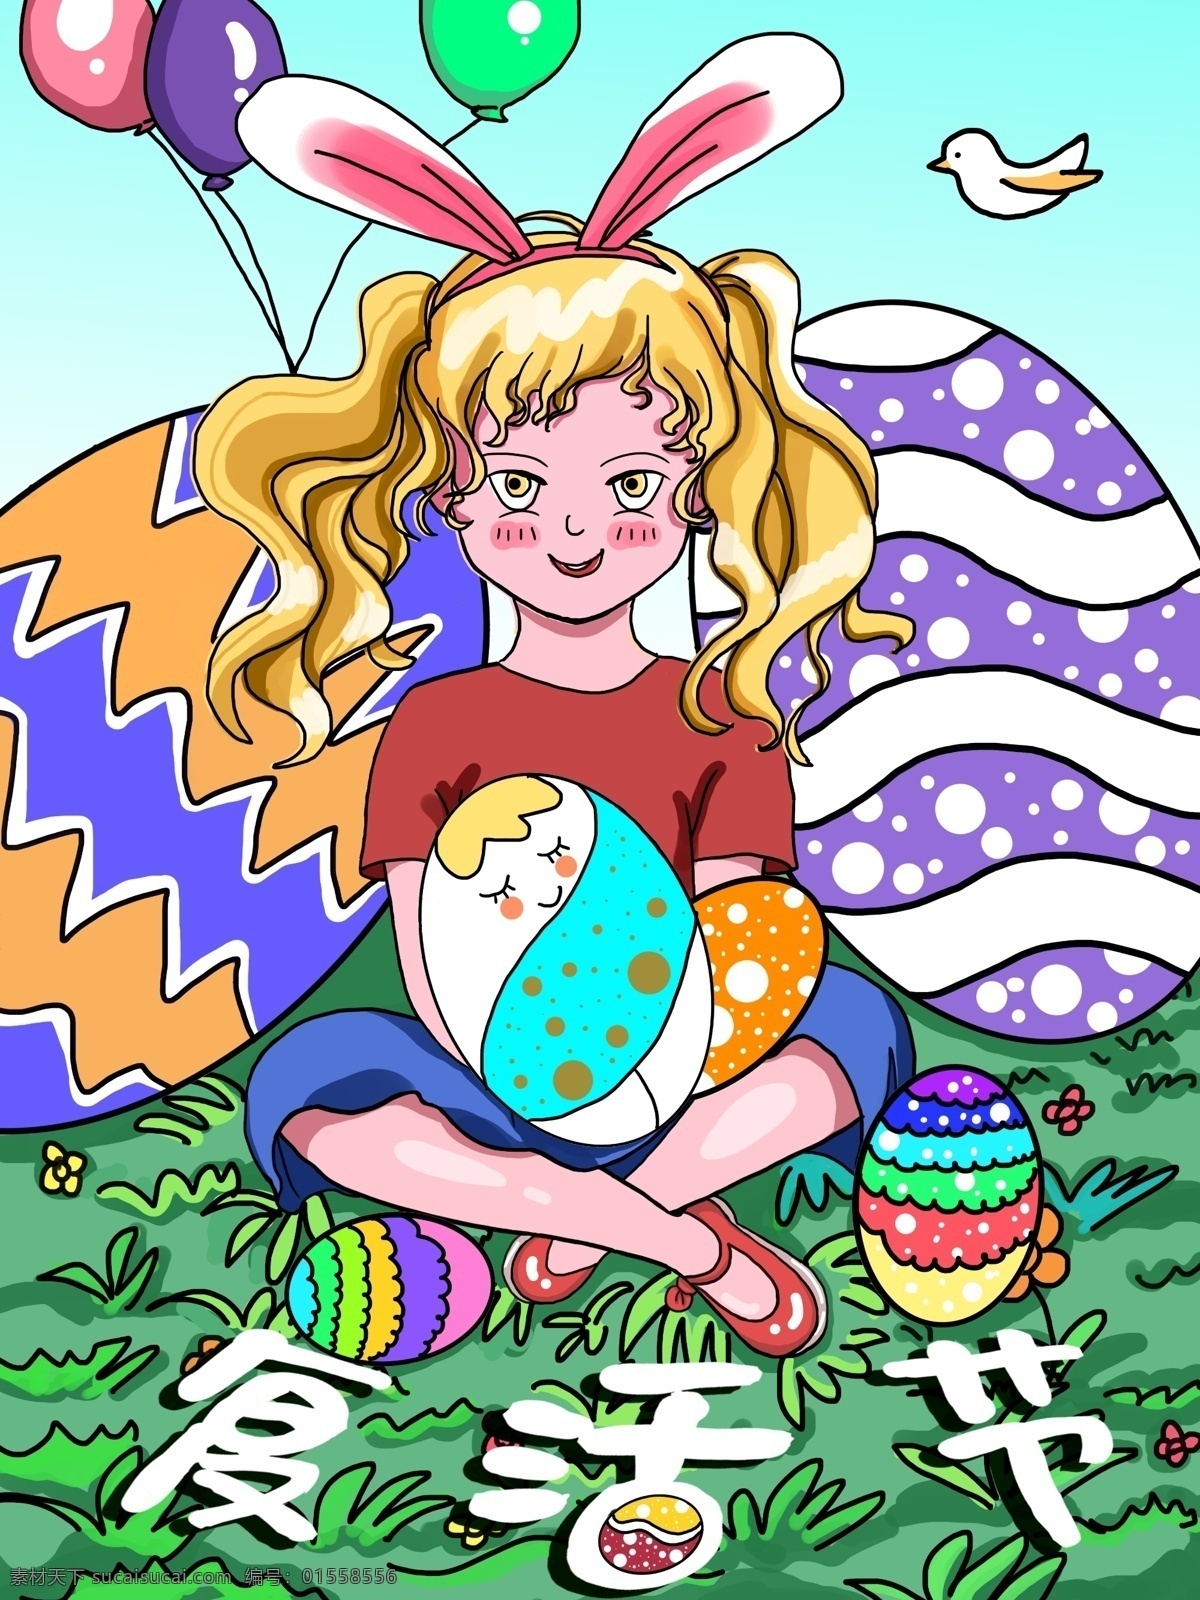 兔 耳 可爱 女孩 复活节 插画 可爱女孩 兔子 兔耳朵 气球 彩蛋 节日 壁纸 儿童插画 涂鸦 卡通 儿童